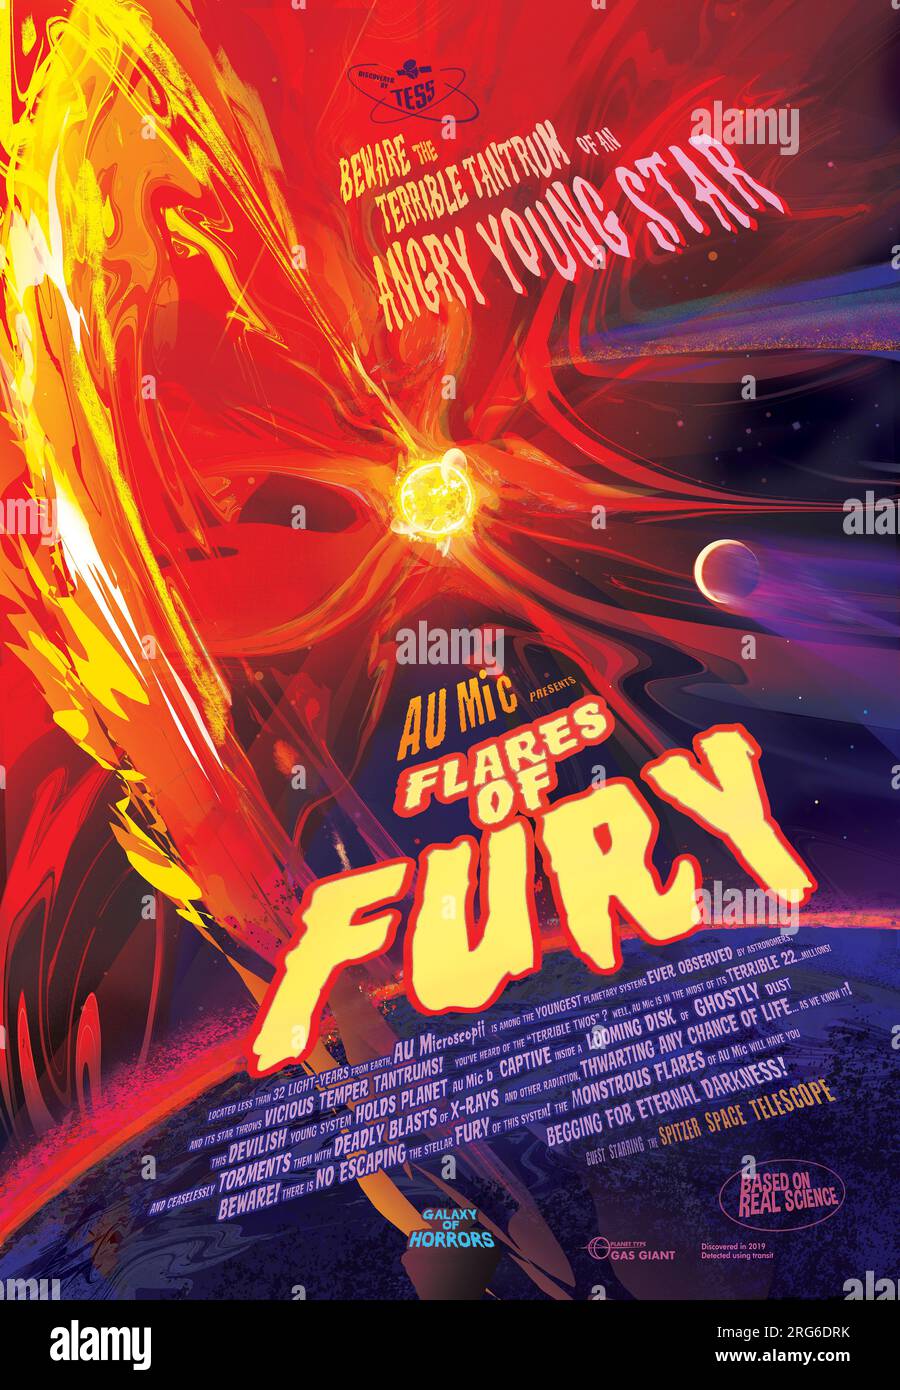 Poster Flares of Fury, AU Microscopii. Foto Stock